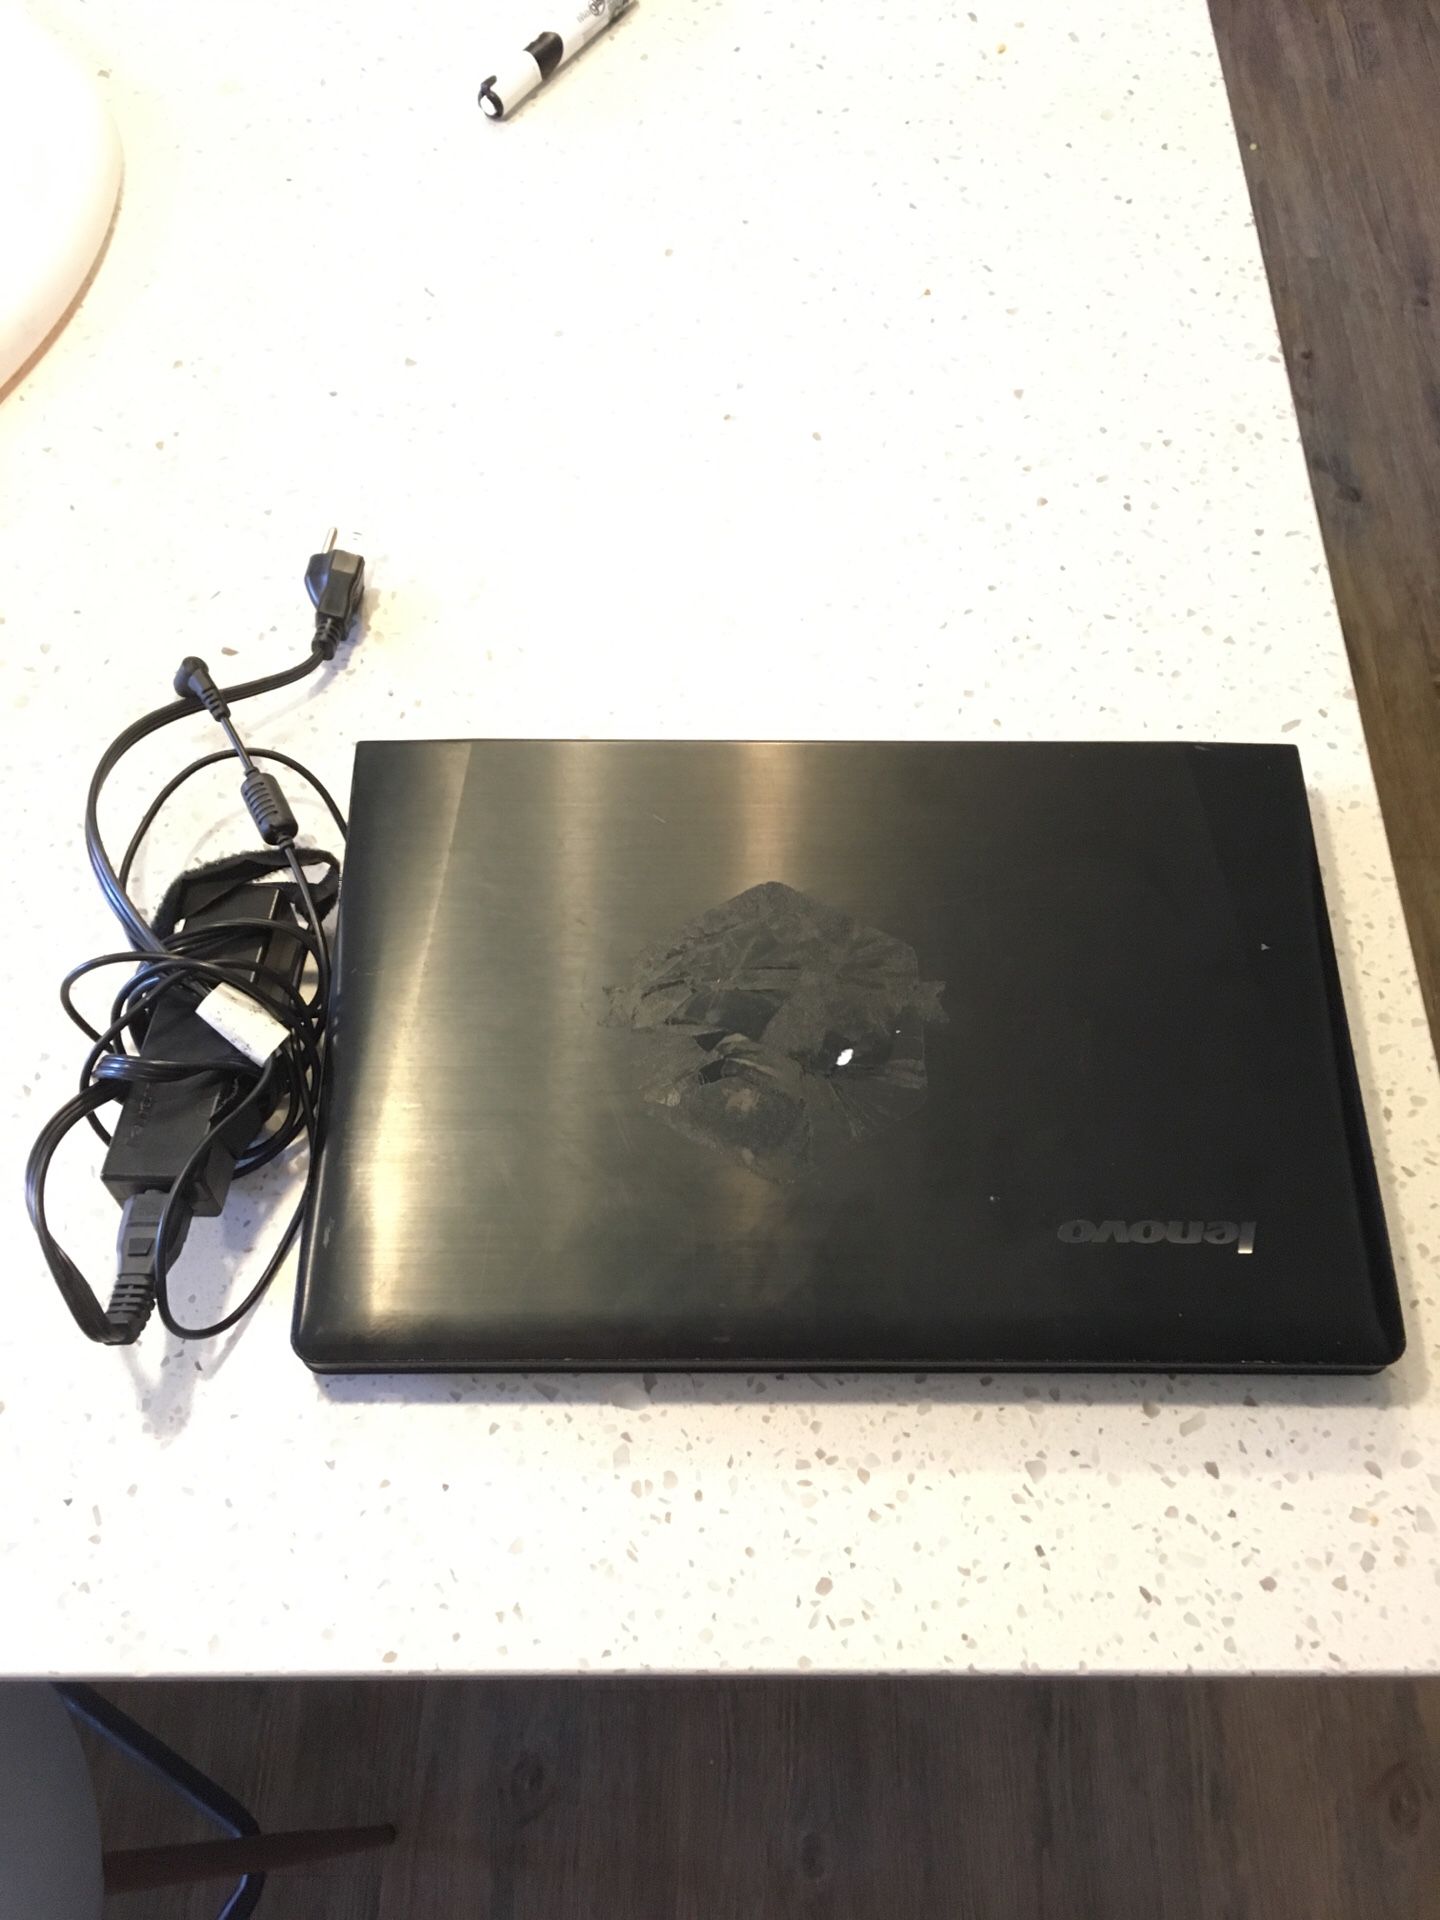 Lenovo Y500 ideapad laptop